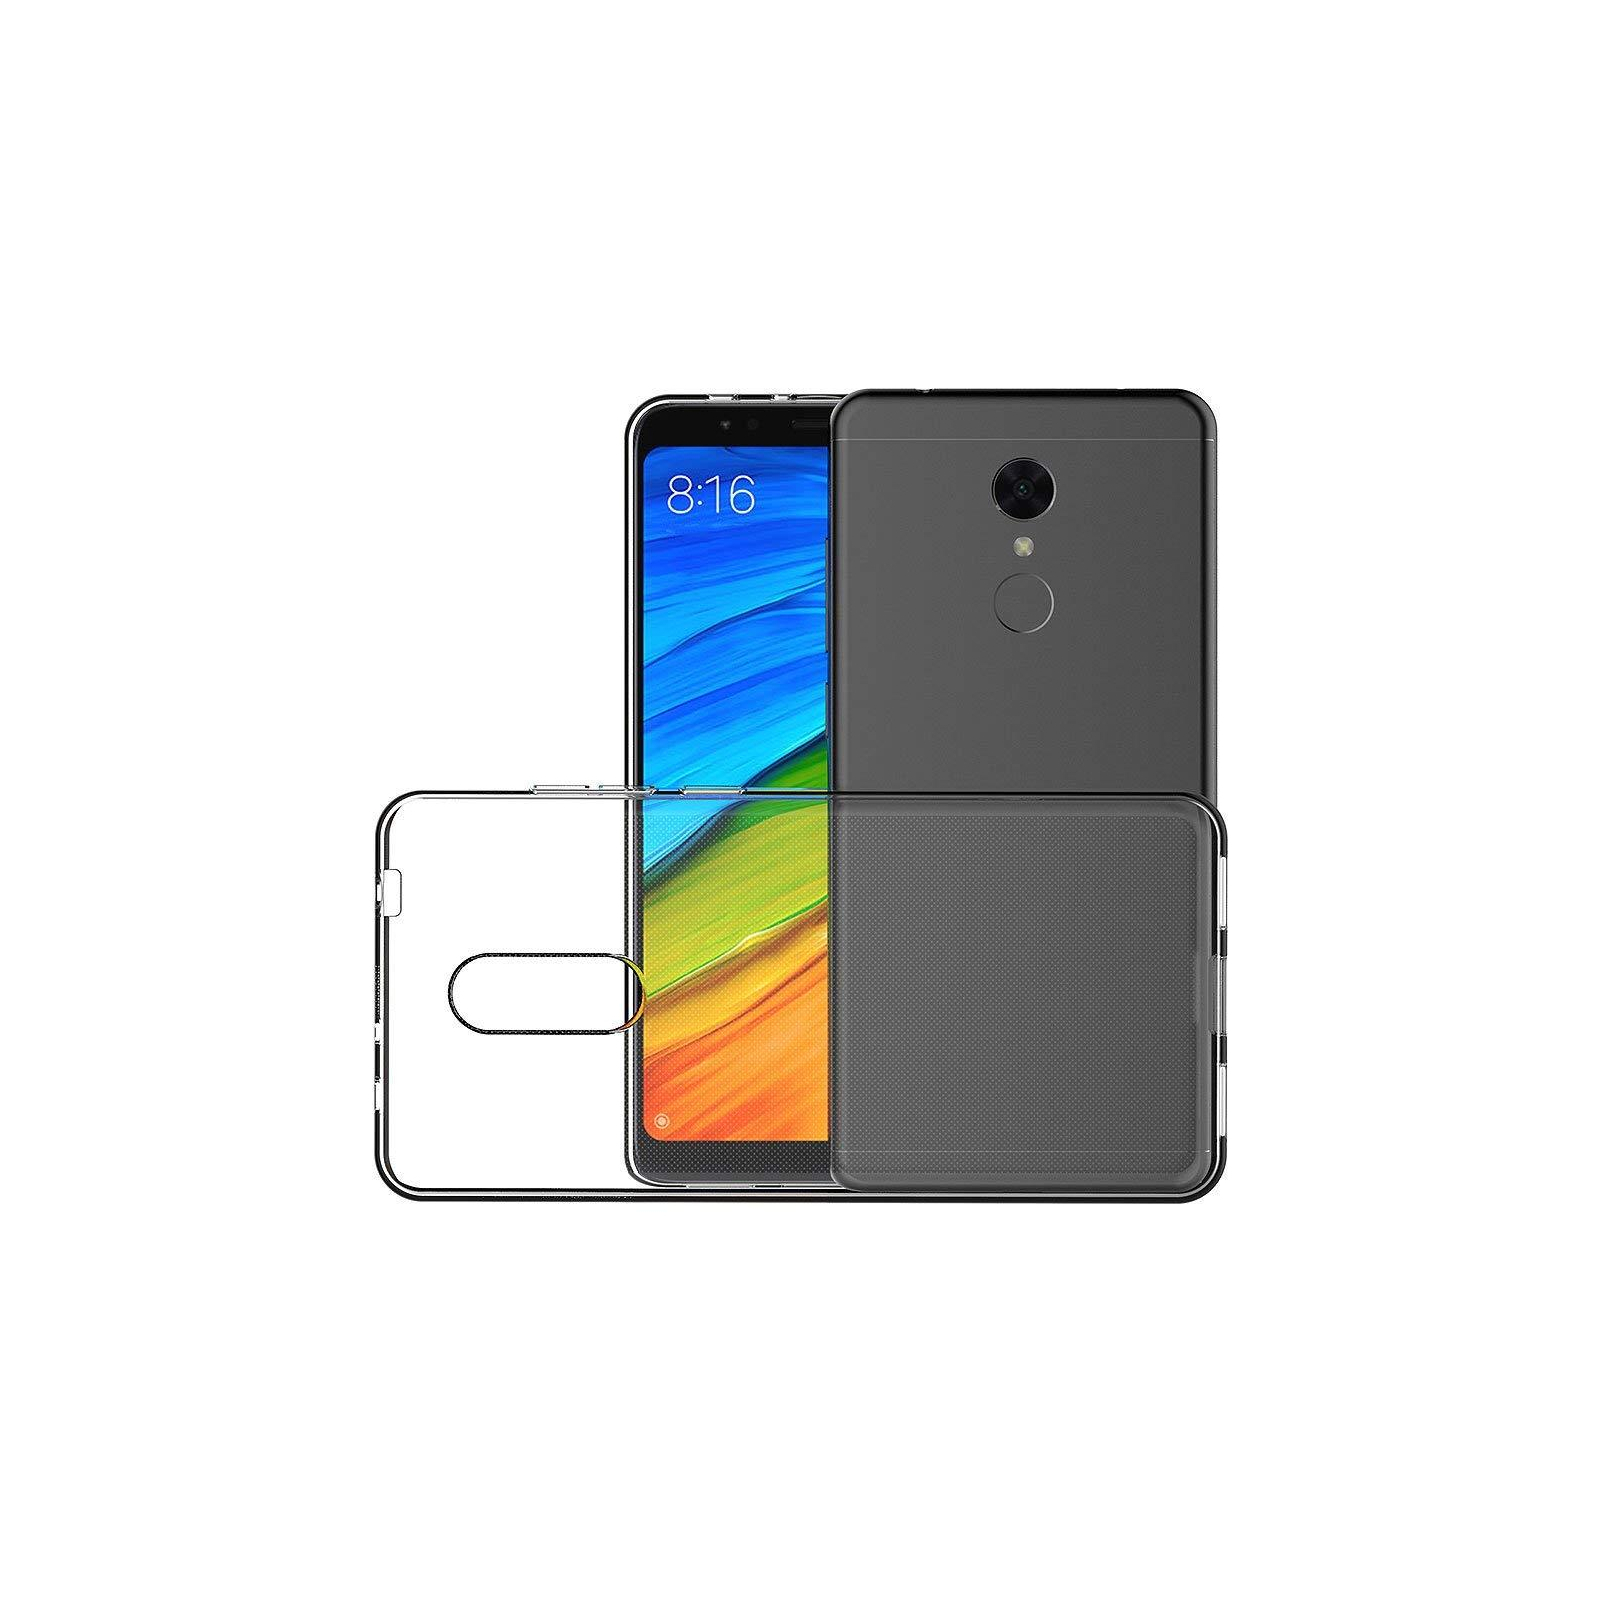 Чехол для мобильного телефона Laudtec для Xiaomi Redmi 5 Clear tpu (Transperent) (LC-XR5)